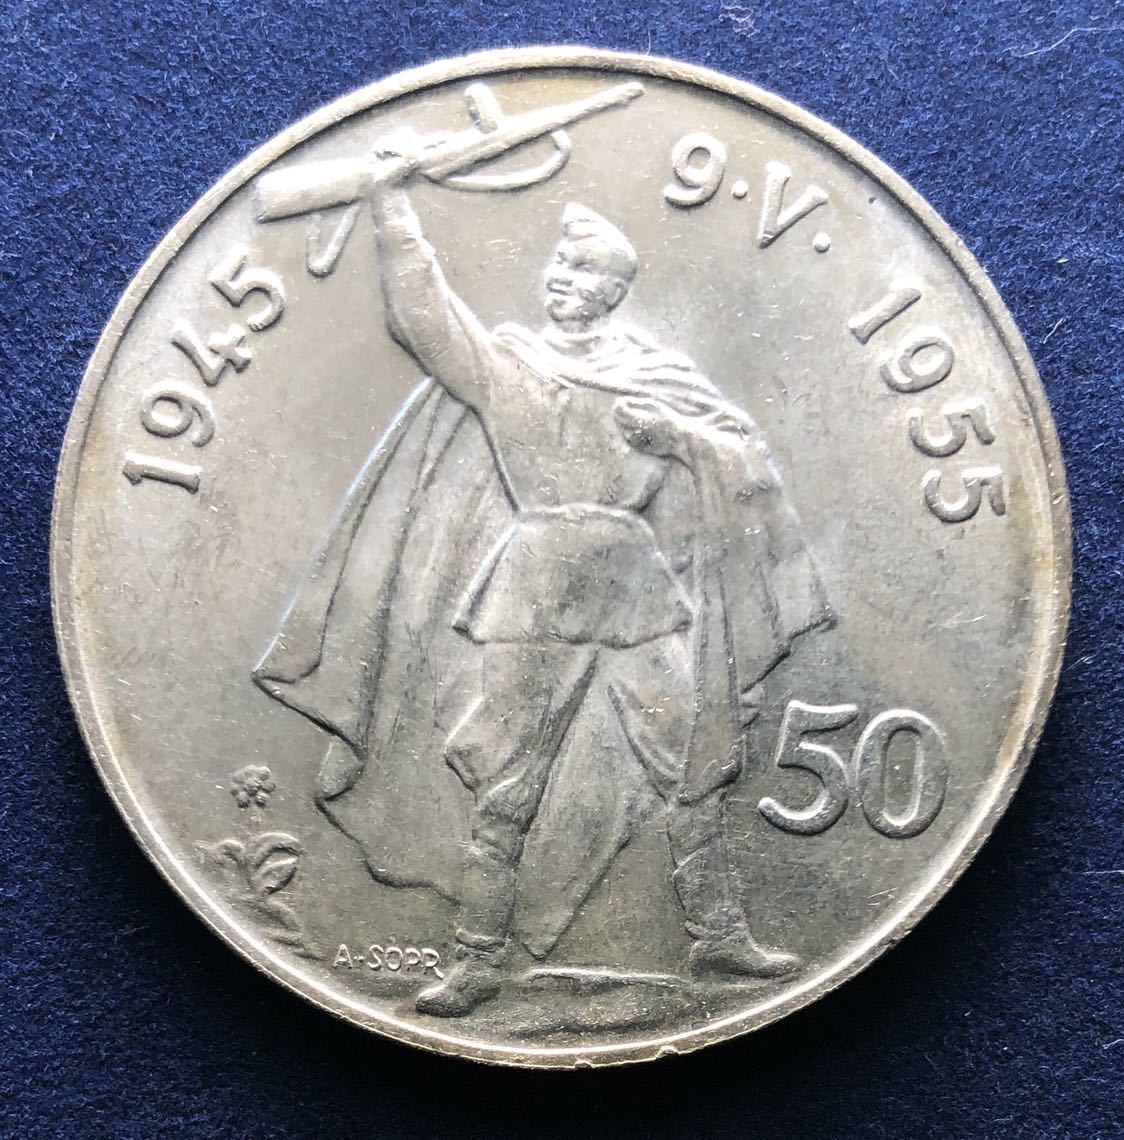  原文:チェコスロバキア銀貨 1955 50コルン 20g ドイツ支配からの解放10周年